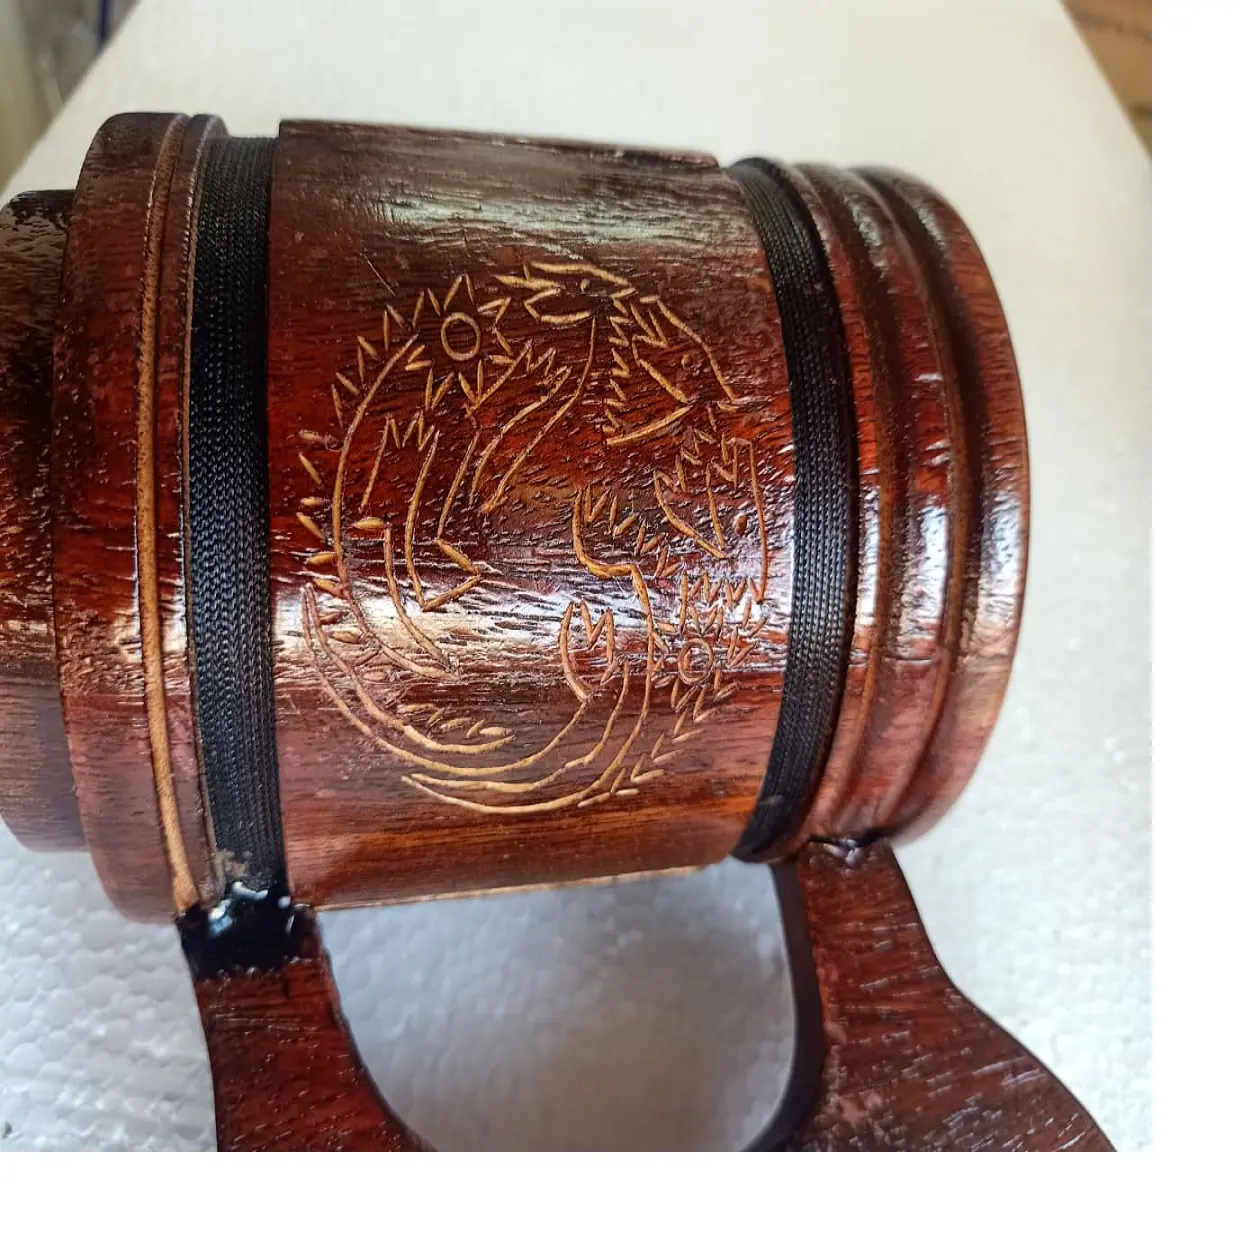 Tasse à boire en bois gravée dragon sur mesure avec poignées en fer, idéale pour les magasins d'approvisionnement à thème nordique et viking